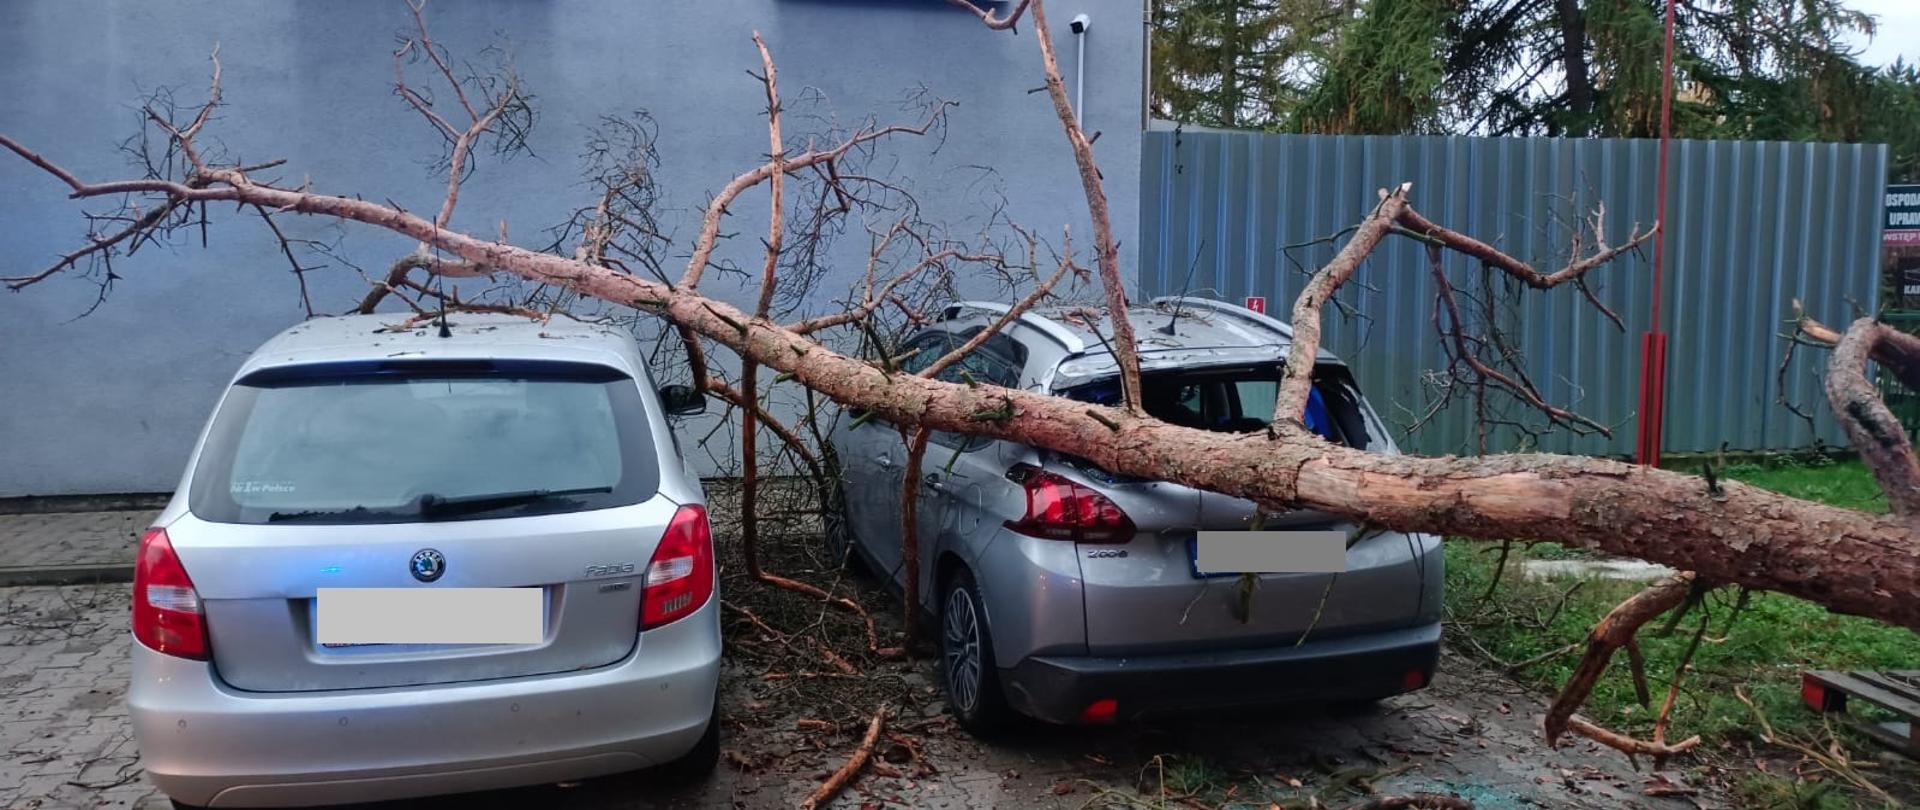 Widać leżące drzewo na dwóch samochodach, które znajdują się na parkingu